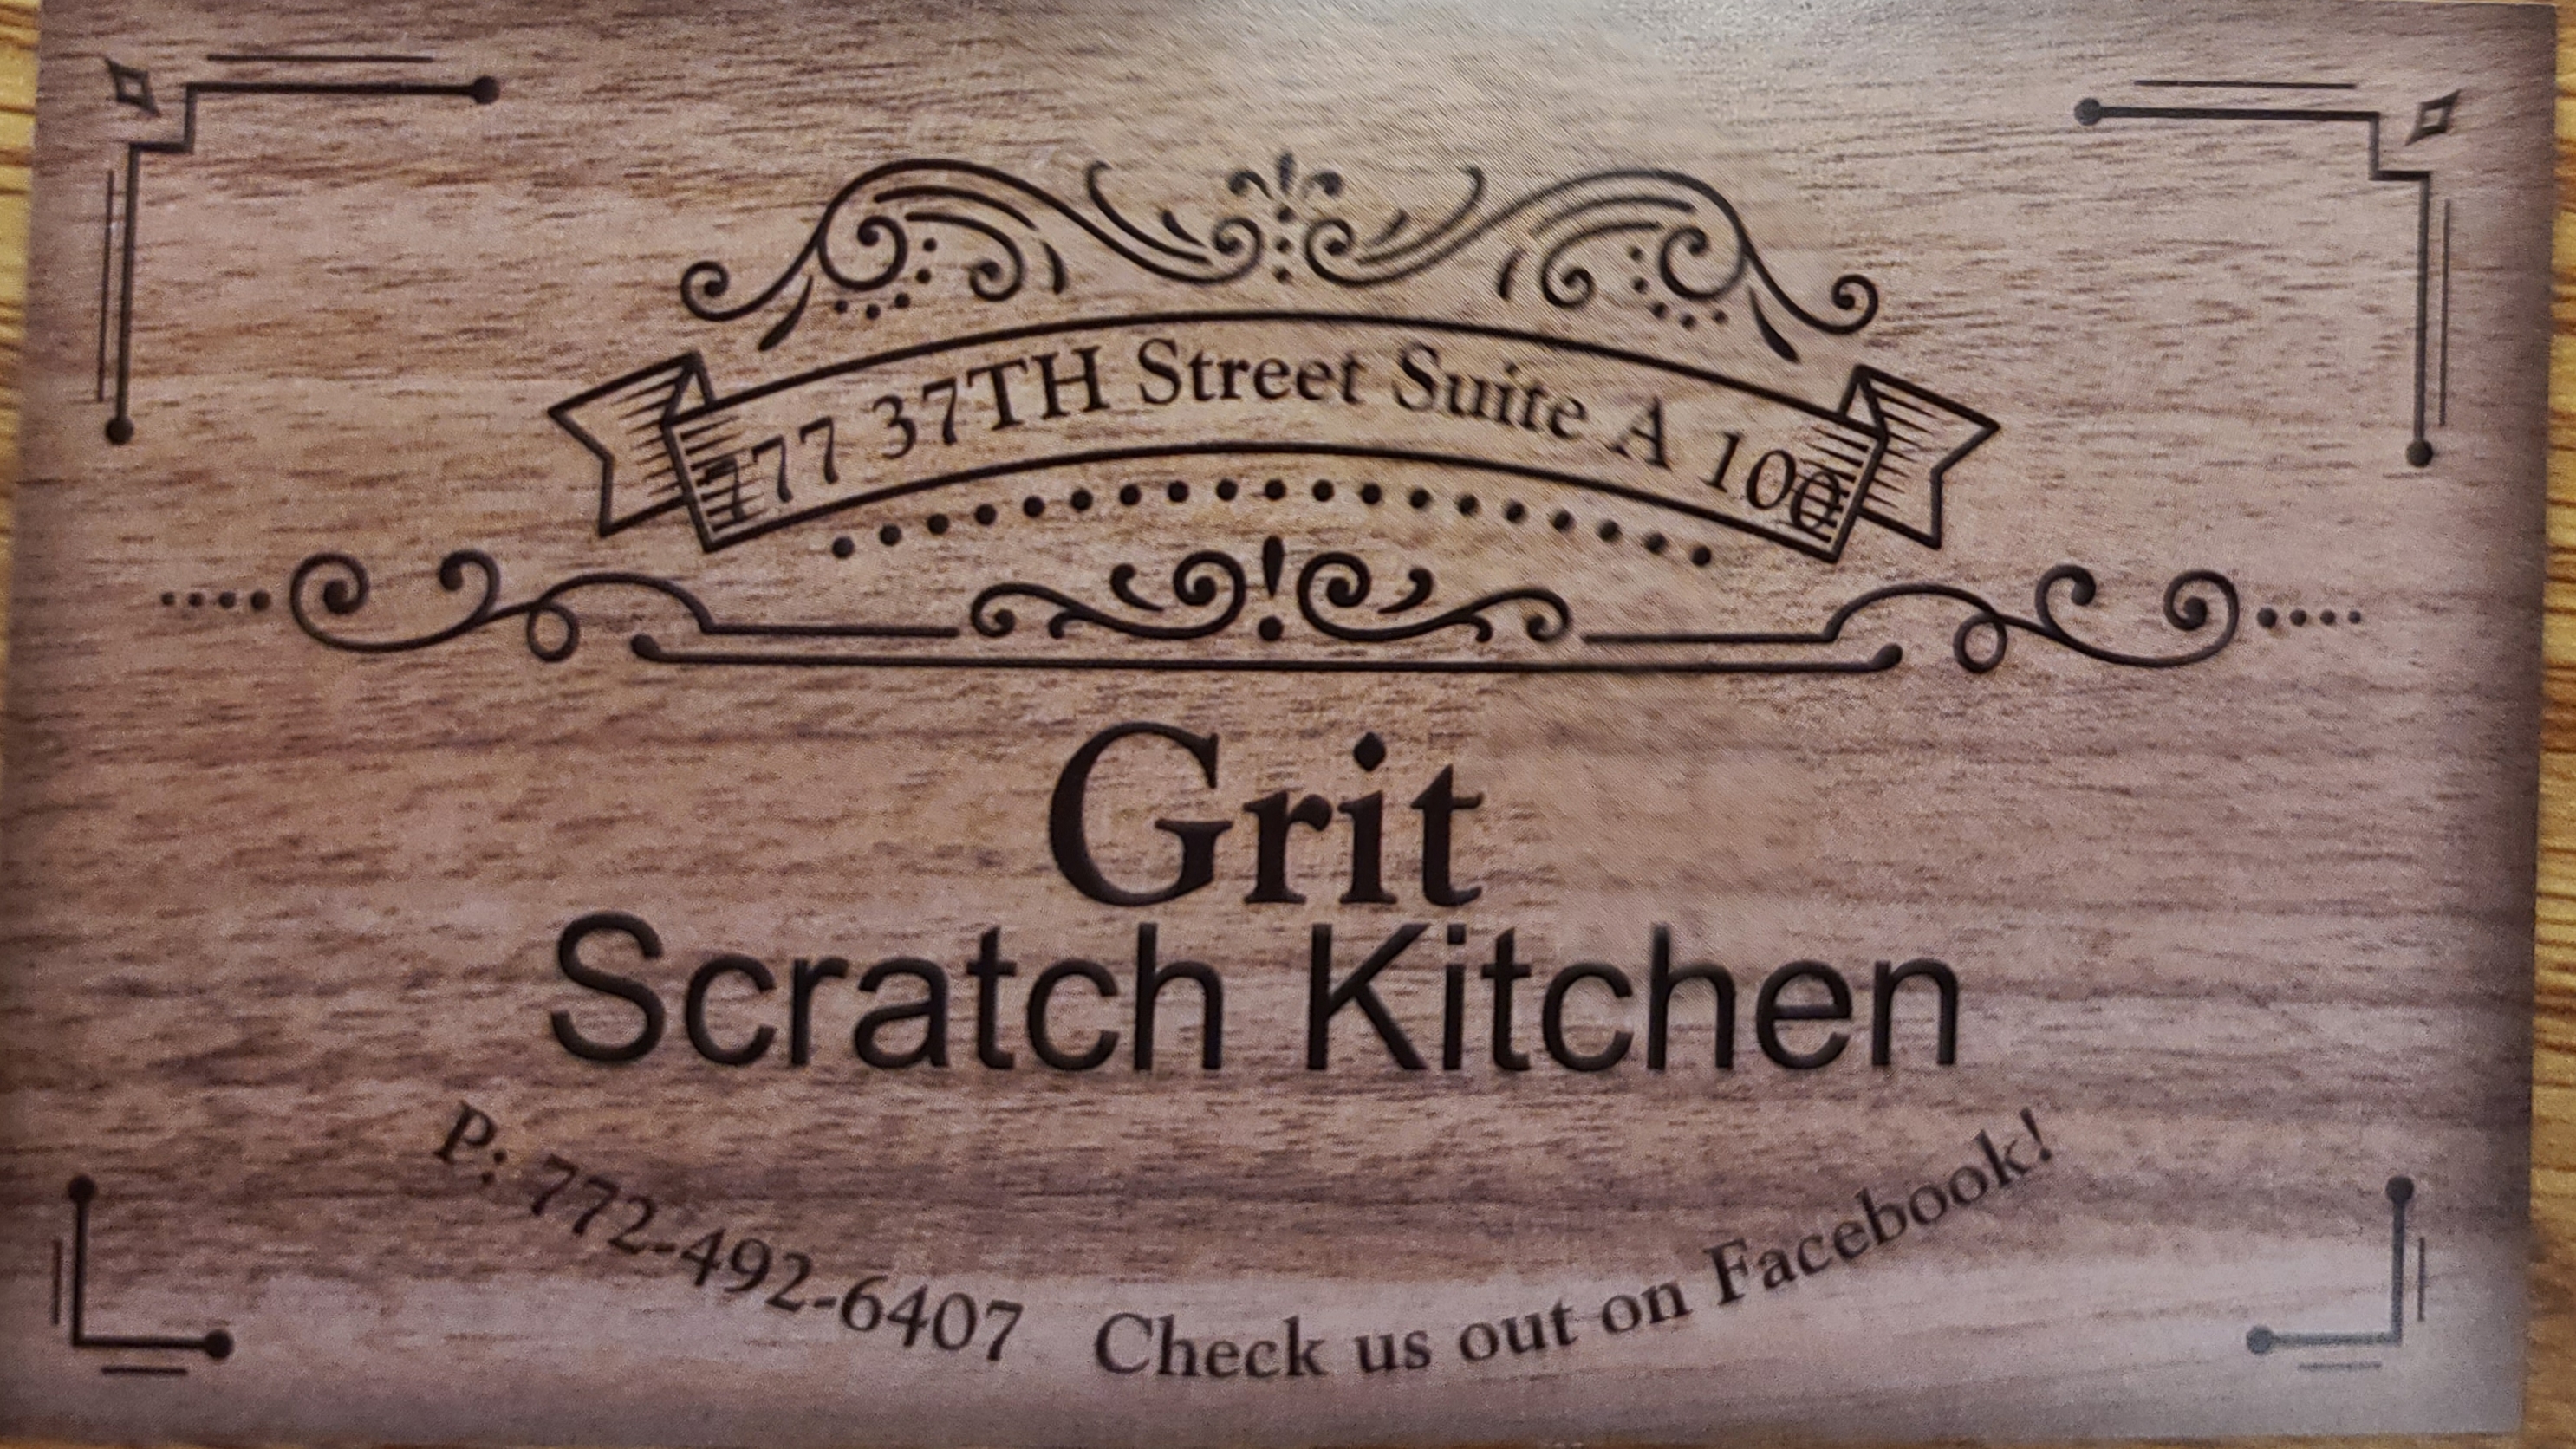 Grit Scratch Kitchen